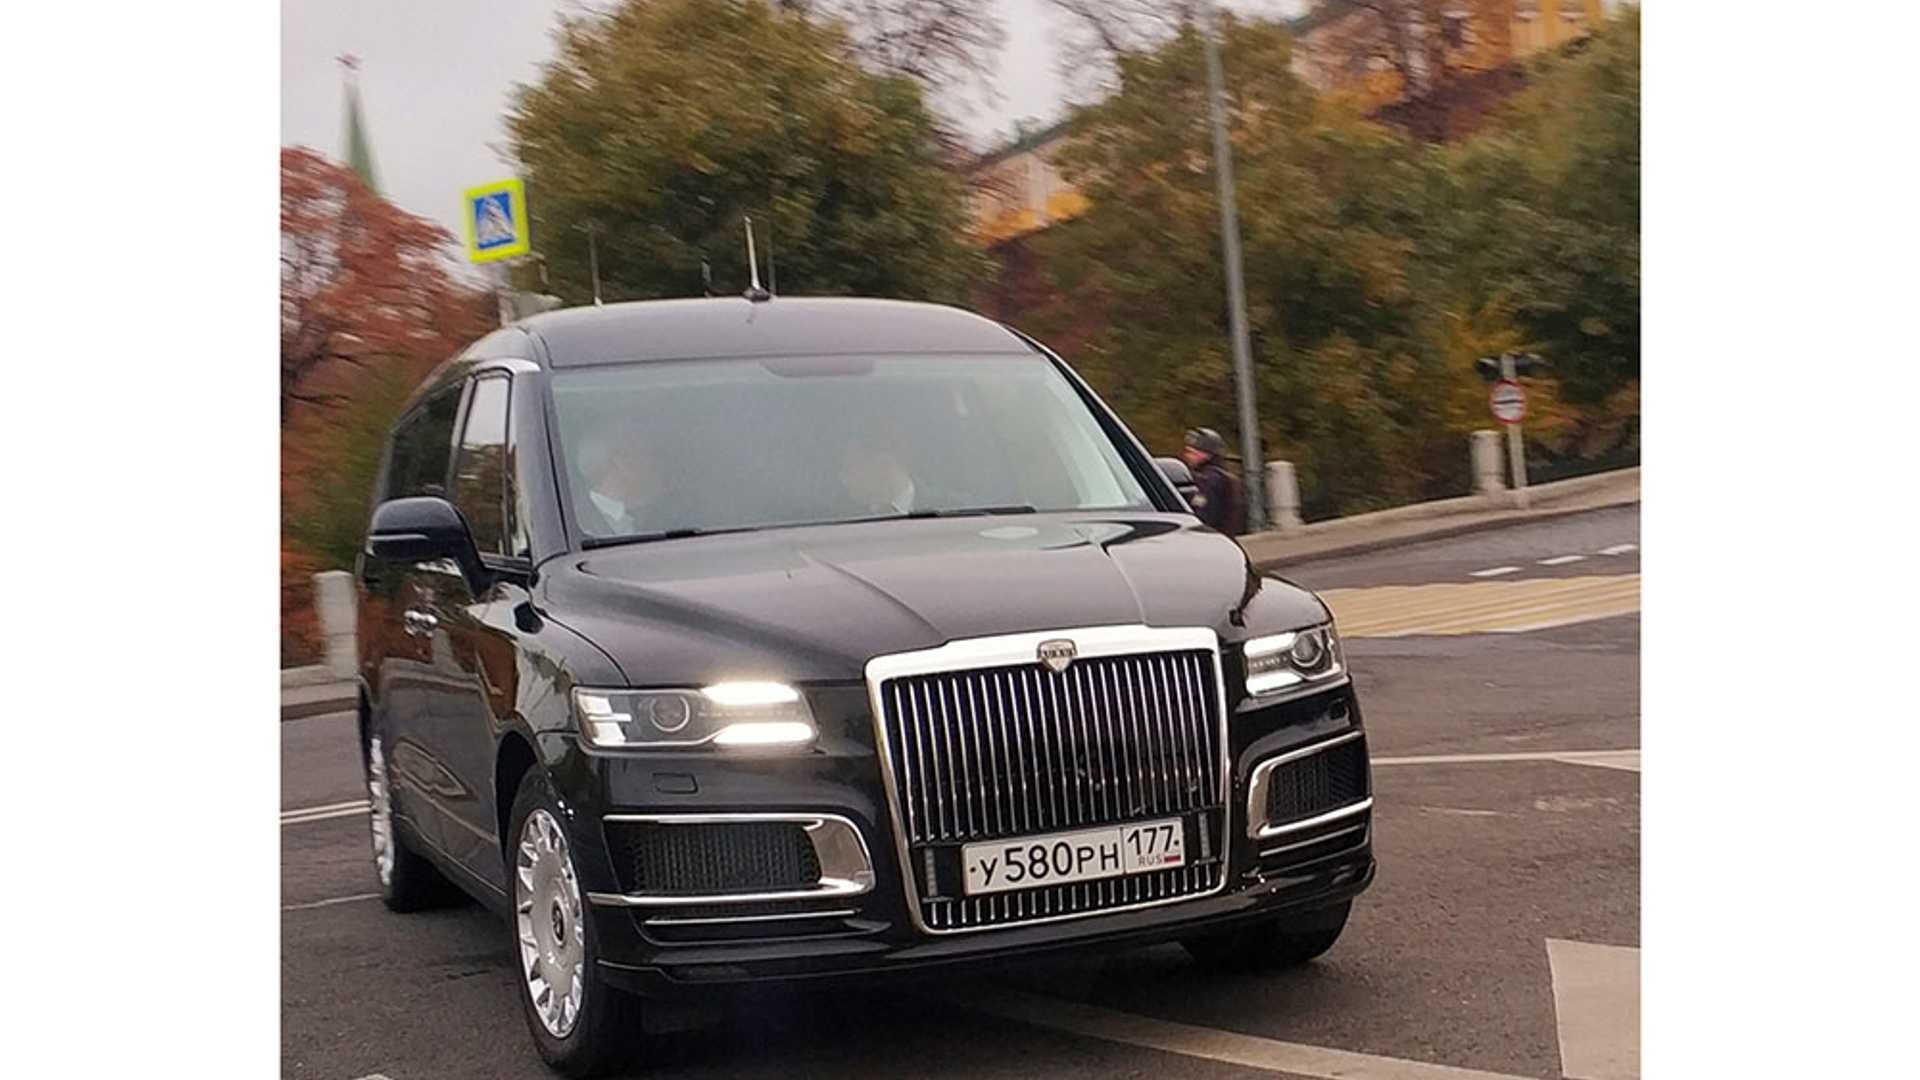 富豪们的新选择 普京专车同款前脸 这款俄制豪华MPV怎么样